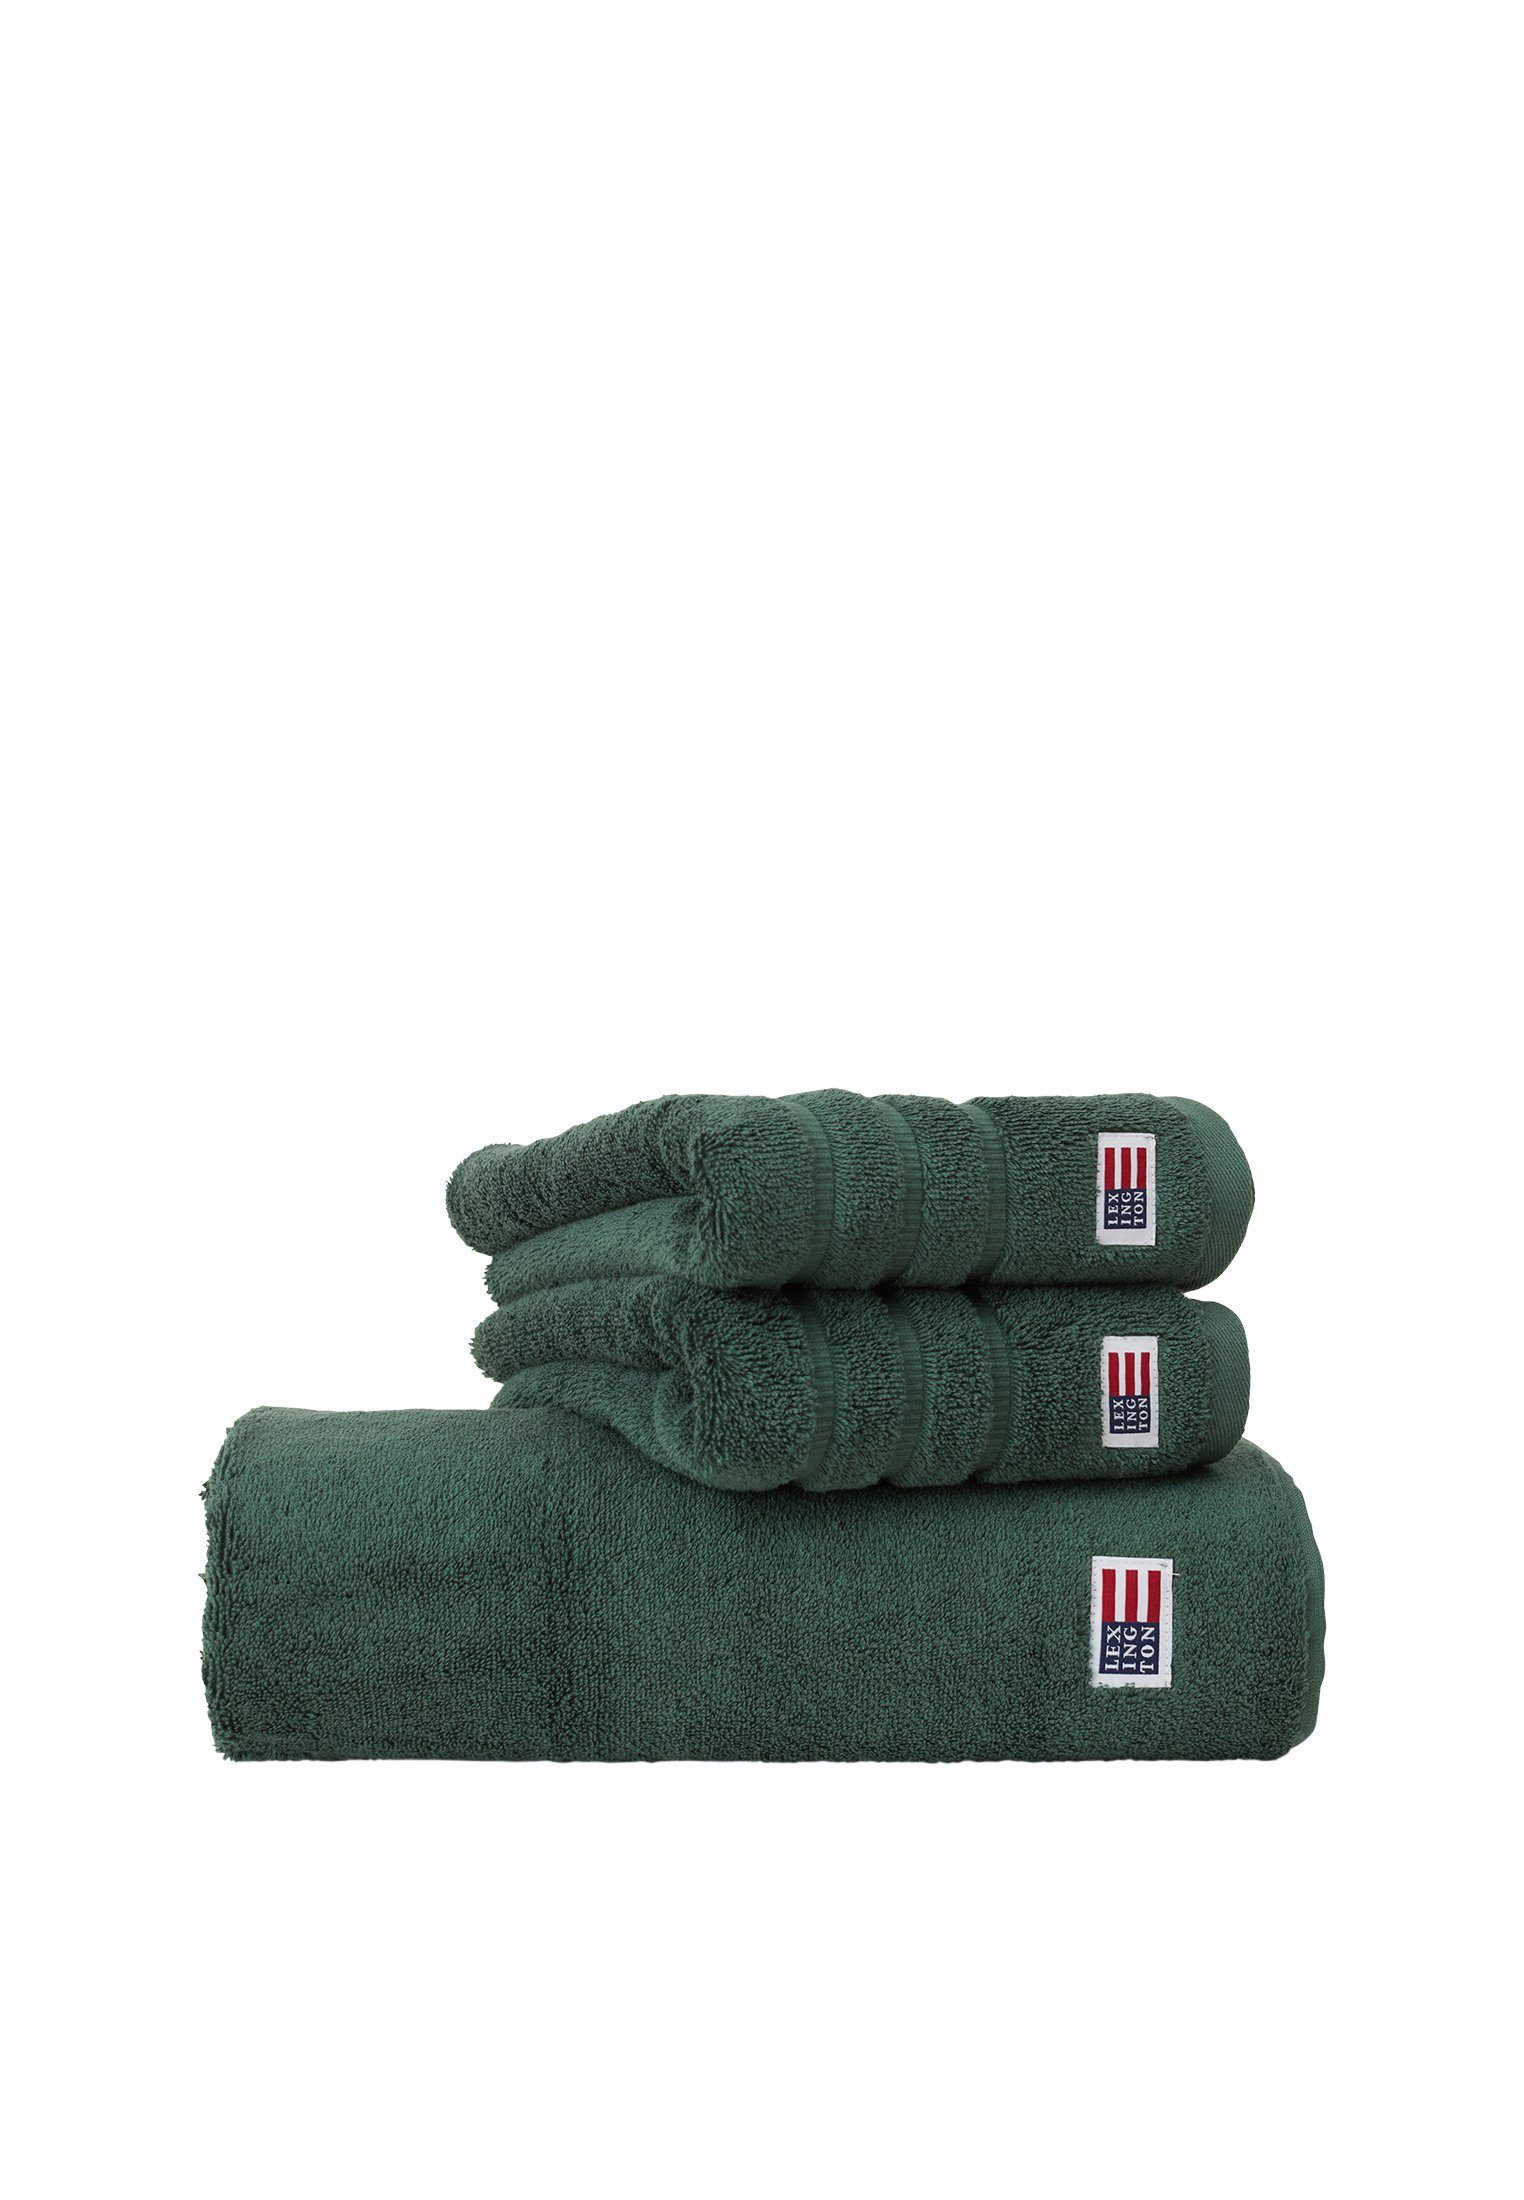 Towel Handtuch Original Lexington green juniper